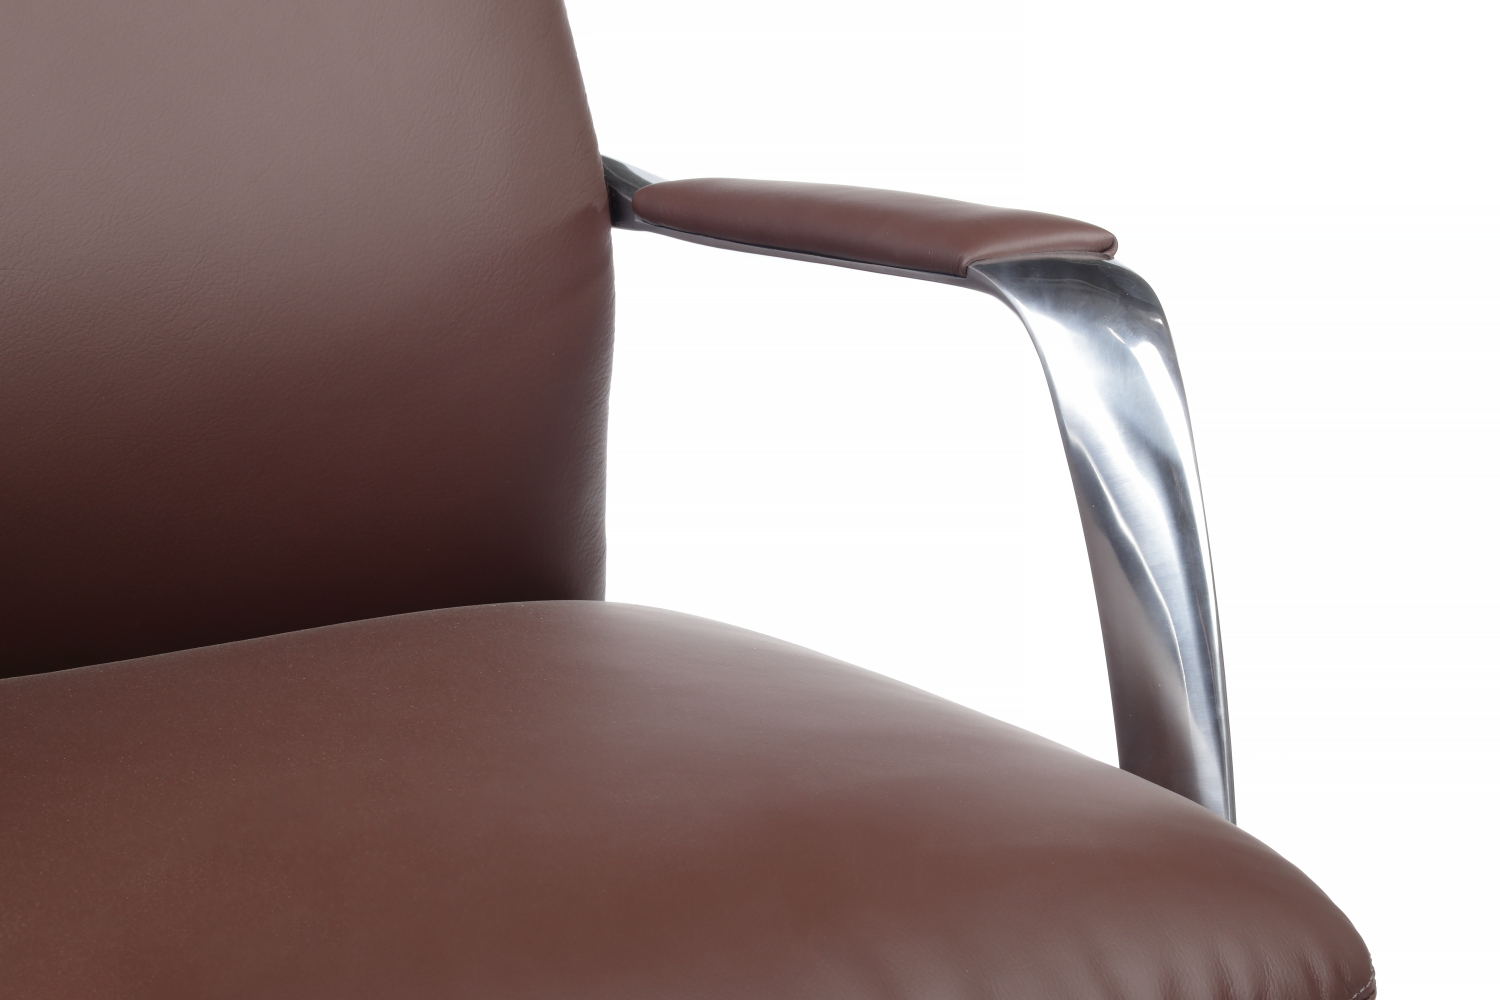 Кресло руководителя RIVA DESIGN Pablo-M B2216-1 без подголовника натуральная кожа Коричневый